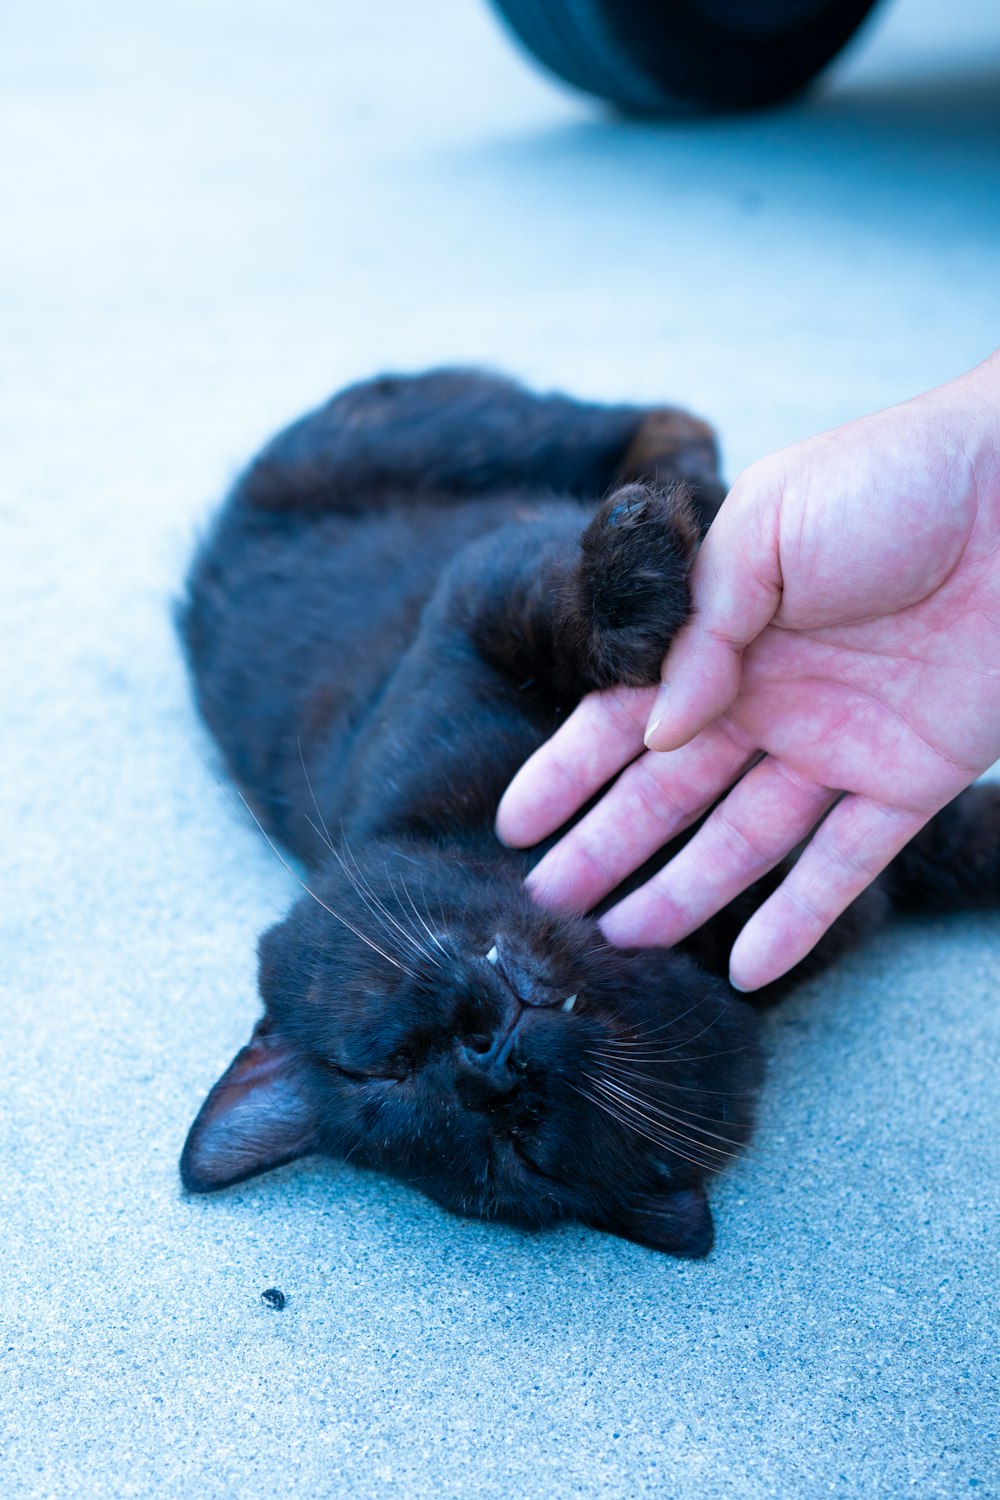 uma pessoa acariciando um gato preto no chão